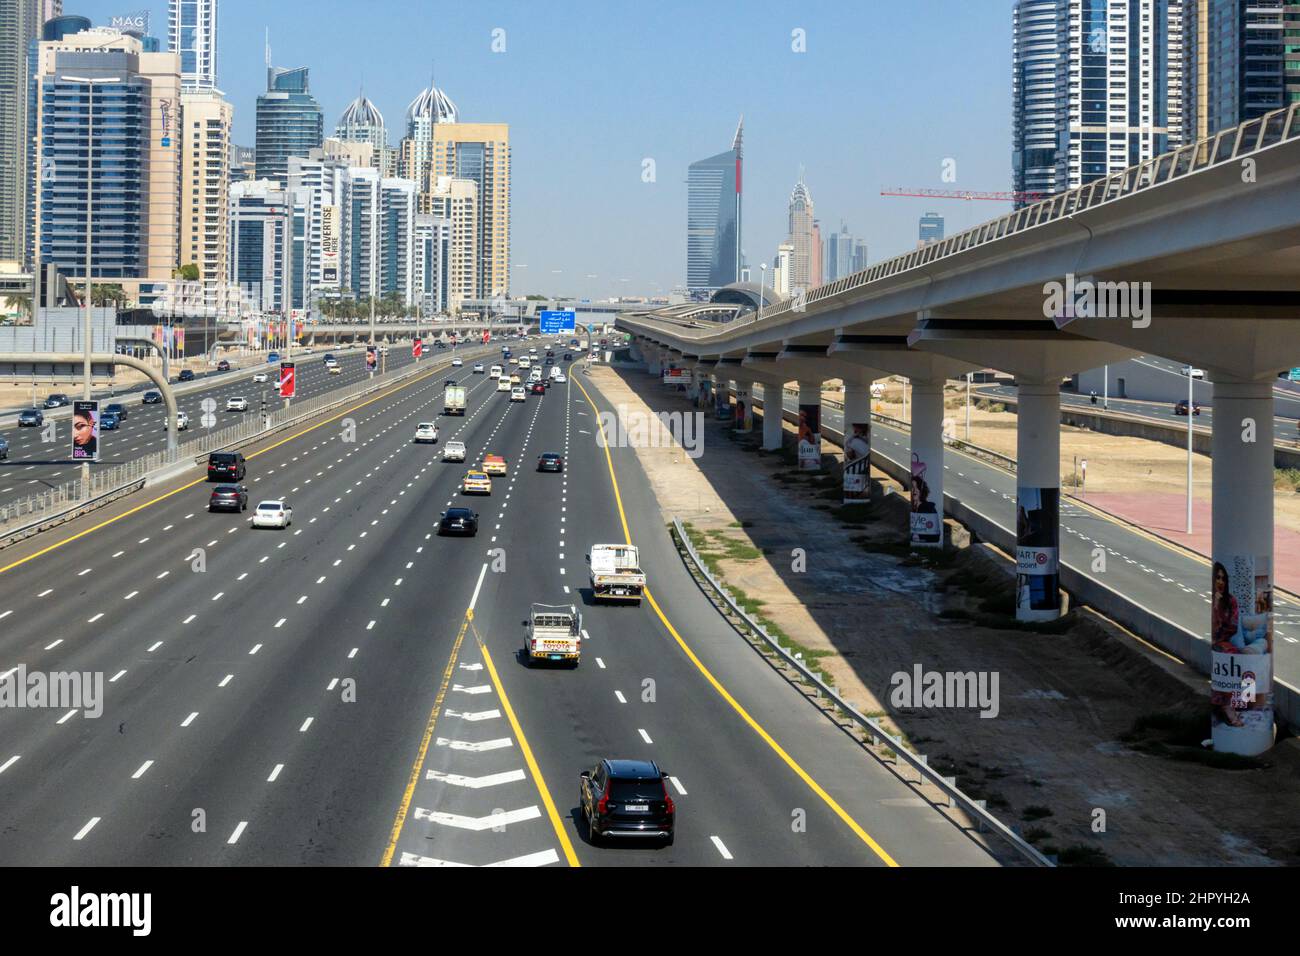 The Sheikh Zayed Road, with the metro line running alongside, Dubai city, United Arab Emirates. Stock Photo